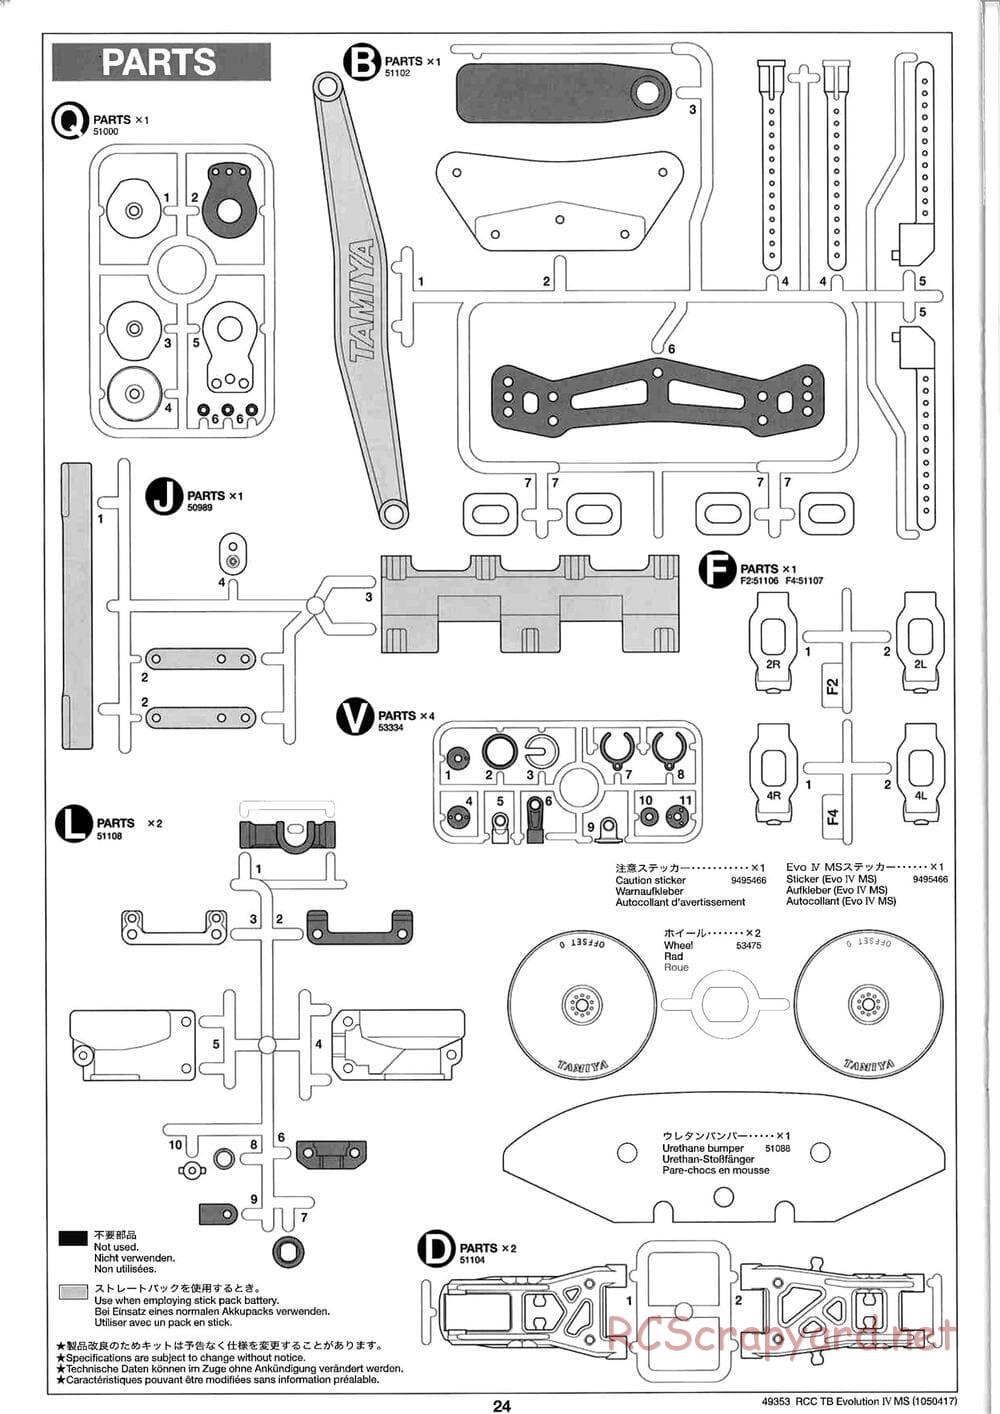 Tamiya - TB Evolution IV MS Chassis - Manual - Page 24